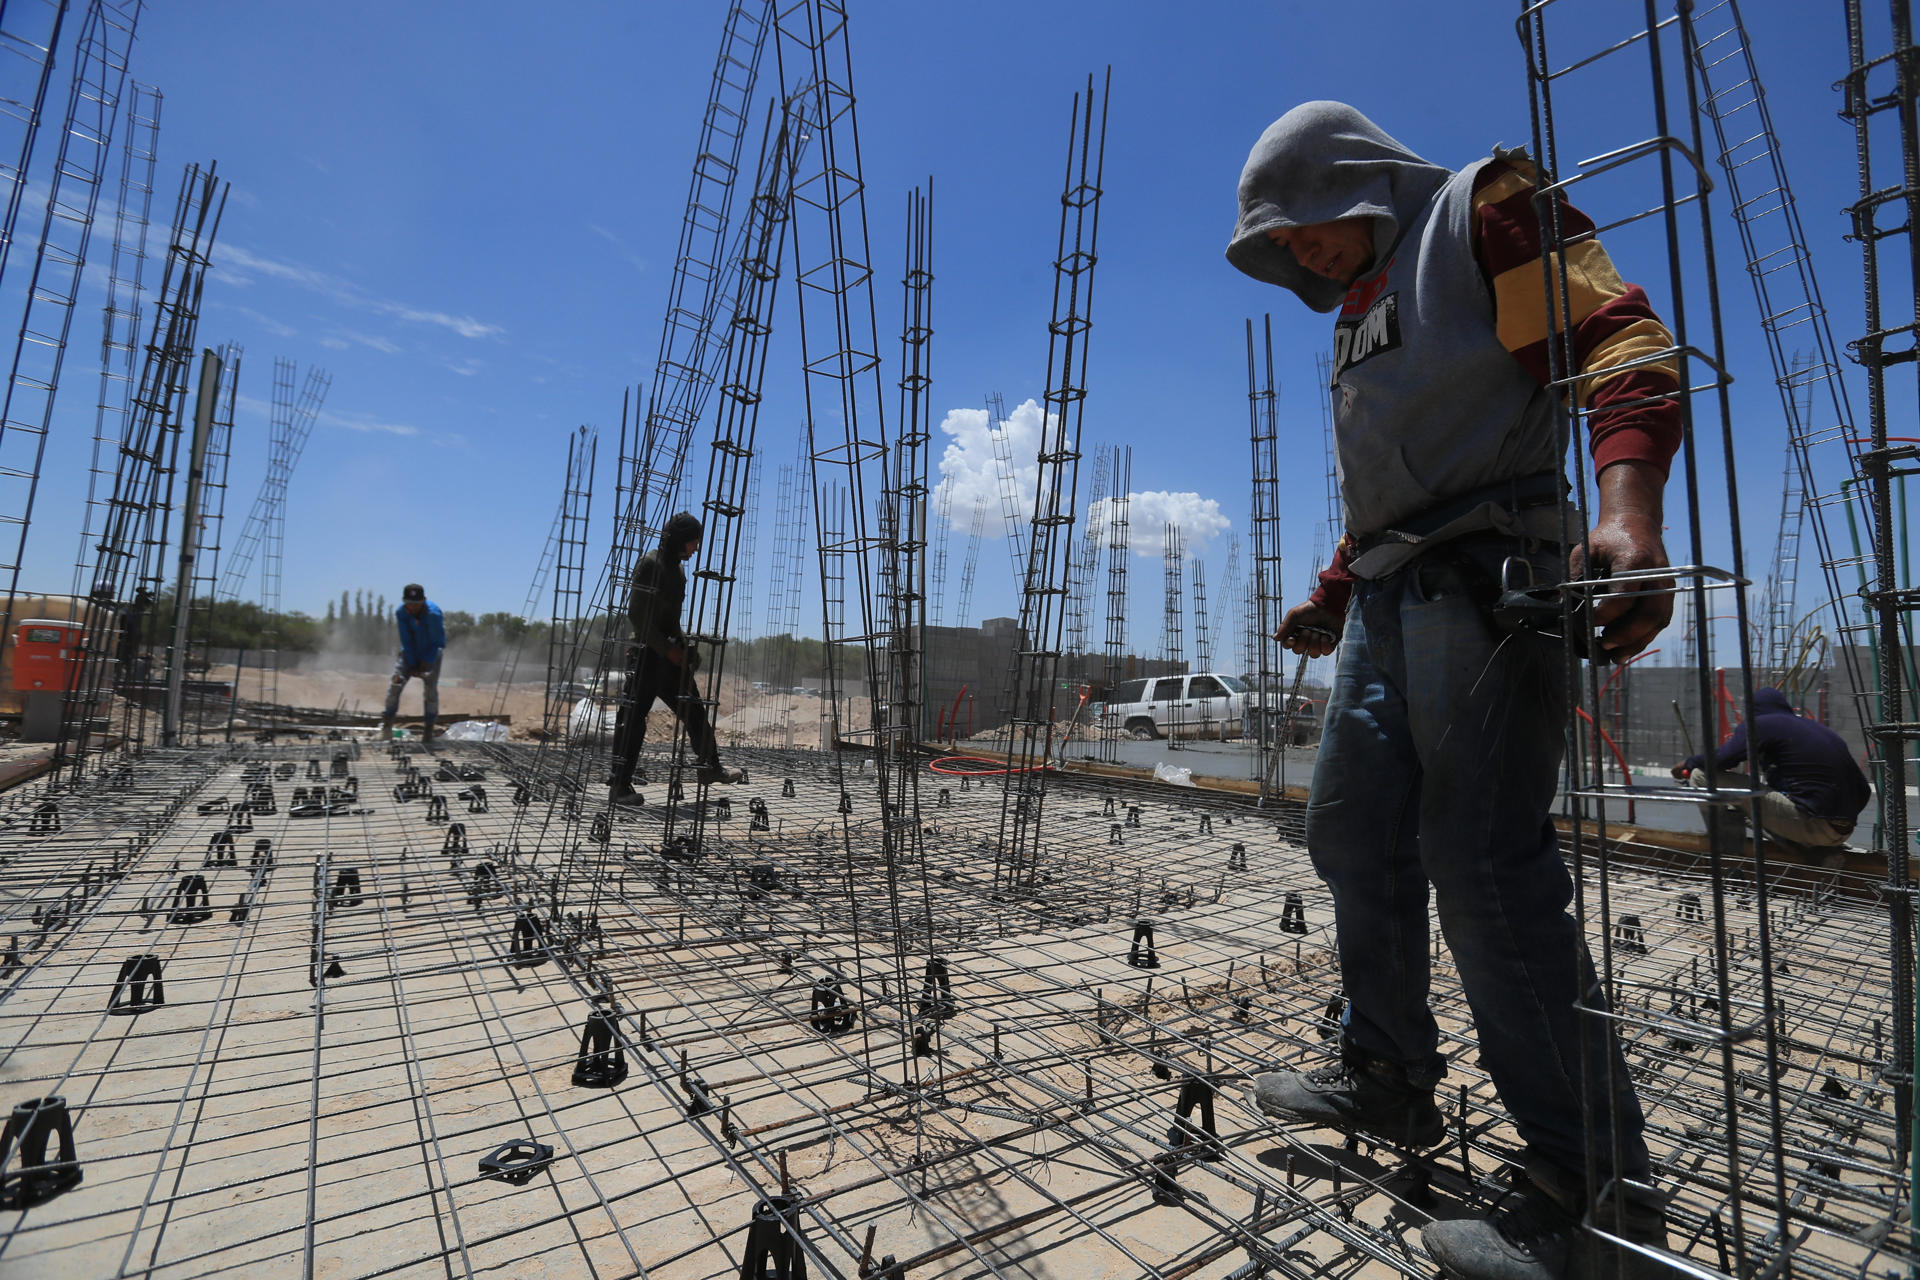 Obreros trabajan en una construcción en Ciudad Juárez (México). EFE/Luis T